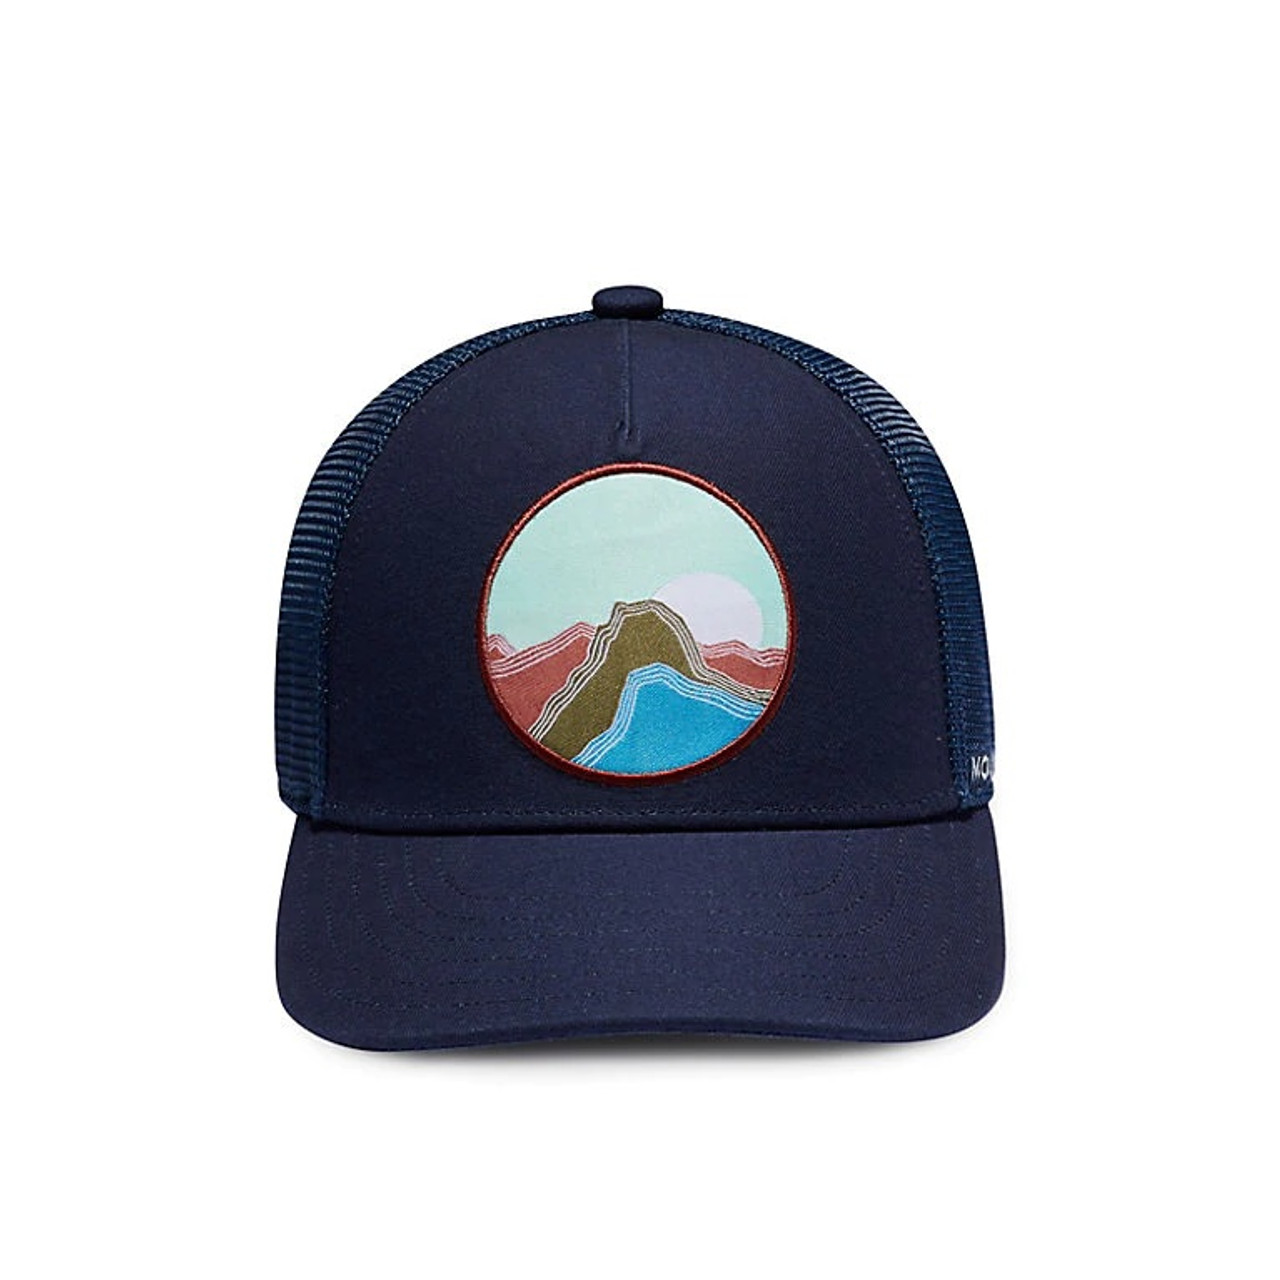 Mountain Hardwear Pinicle Trucker Hat Dark Zinc Snapback